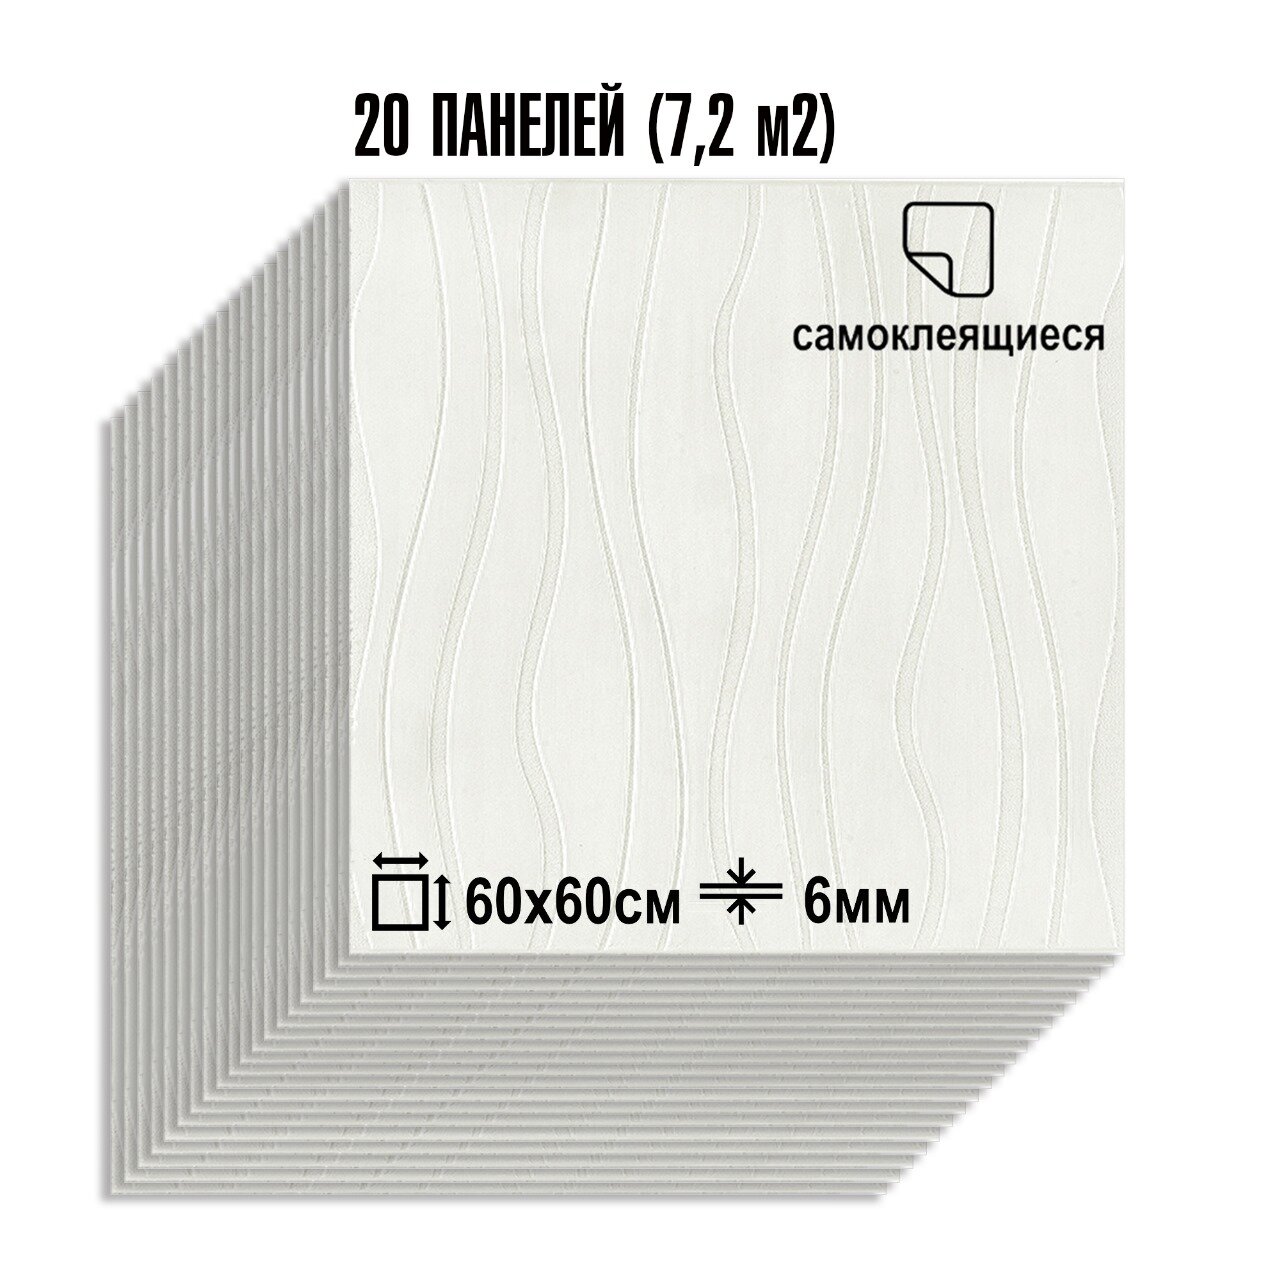 Мега Комплект 20 шт 3D панелей для стен LAKO DECOR коллекция Камень цвет Белый 70x60см толщина 6мм